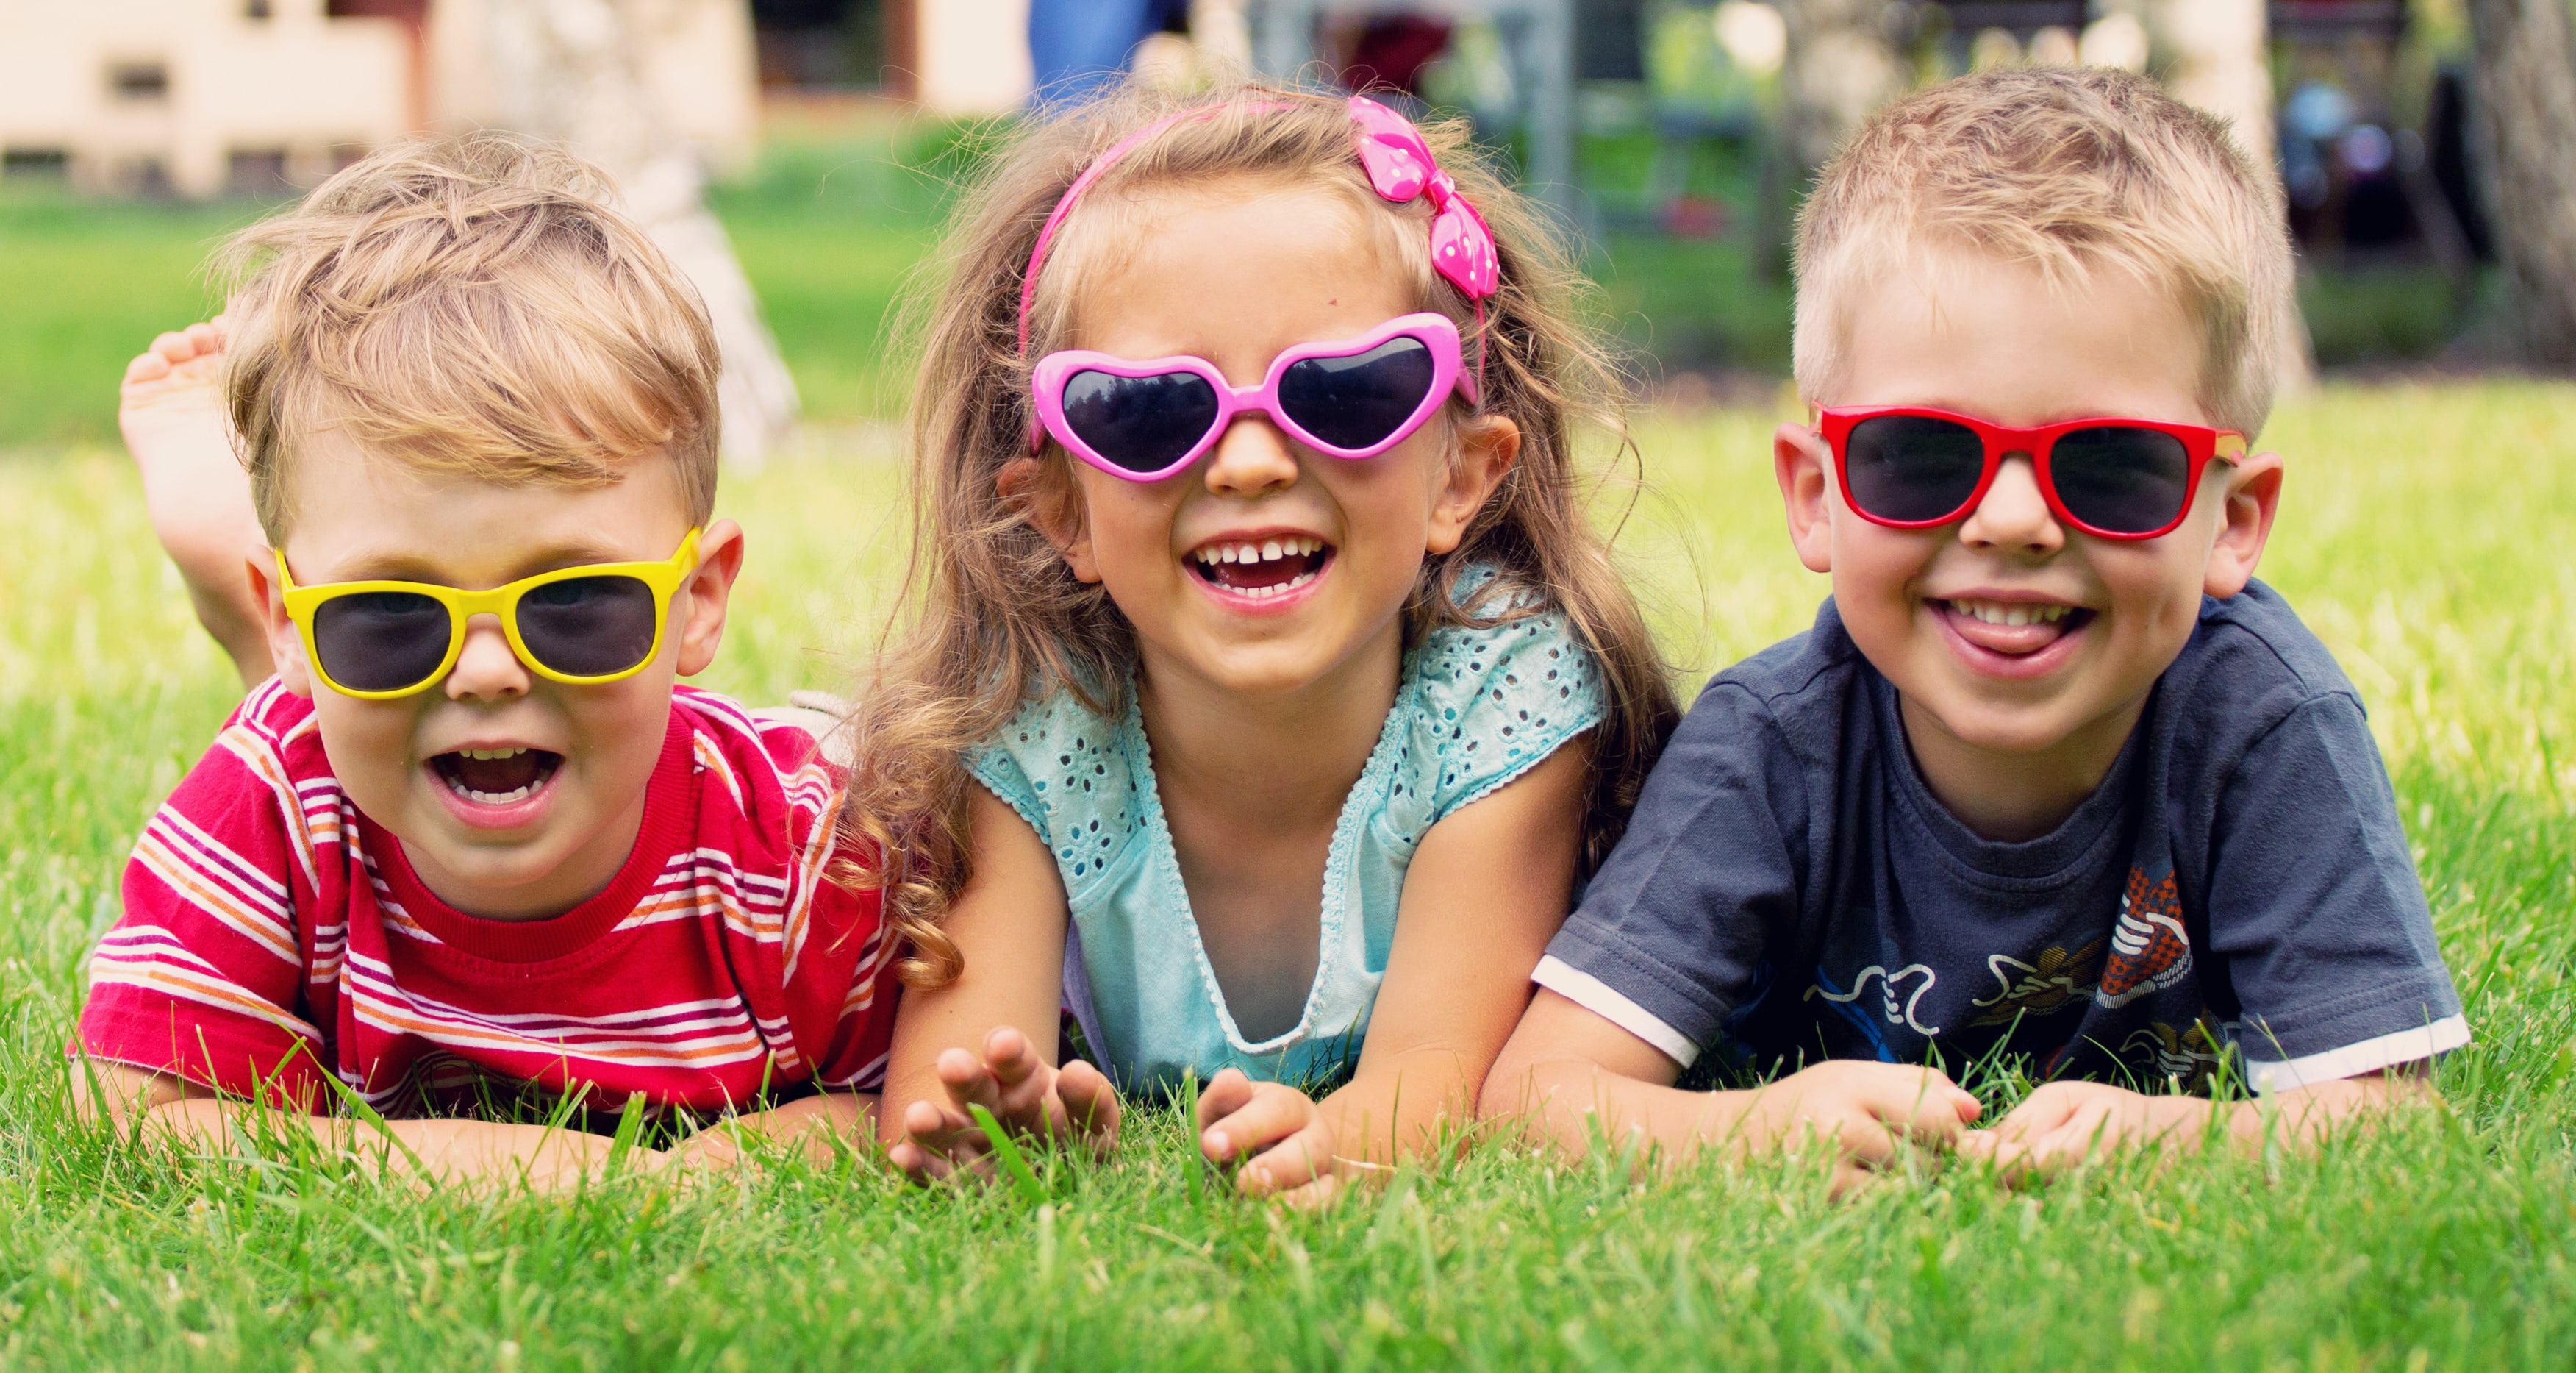 A qué edad pueden usar gafas de sol los niños?